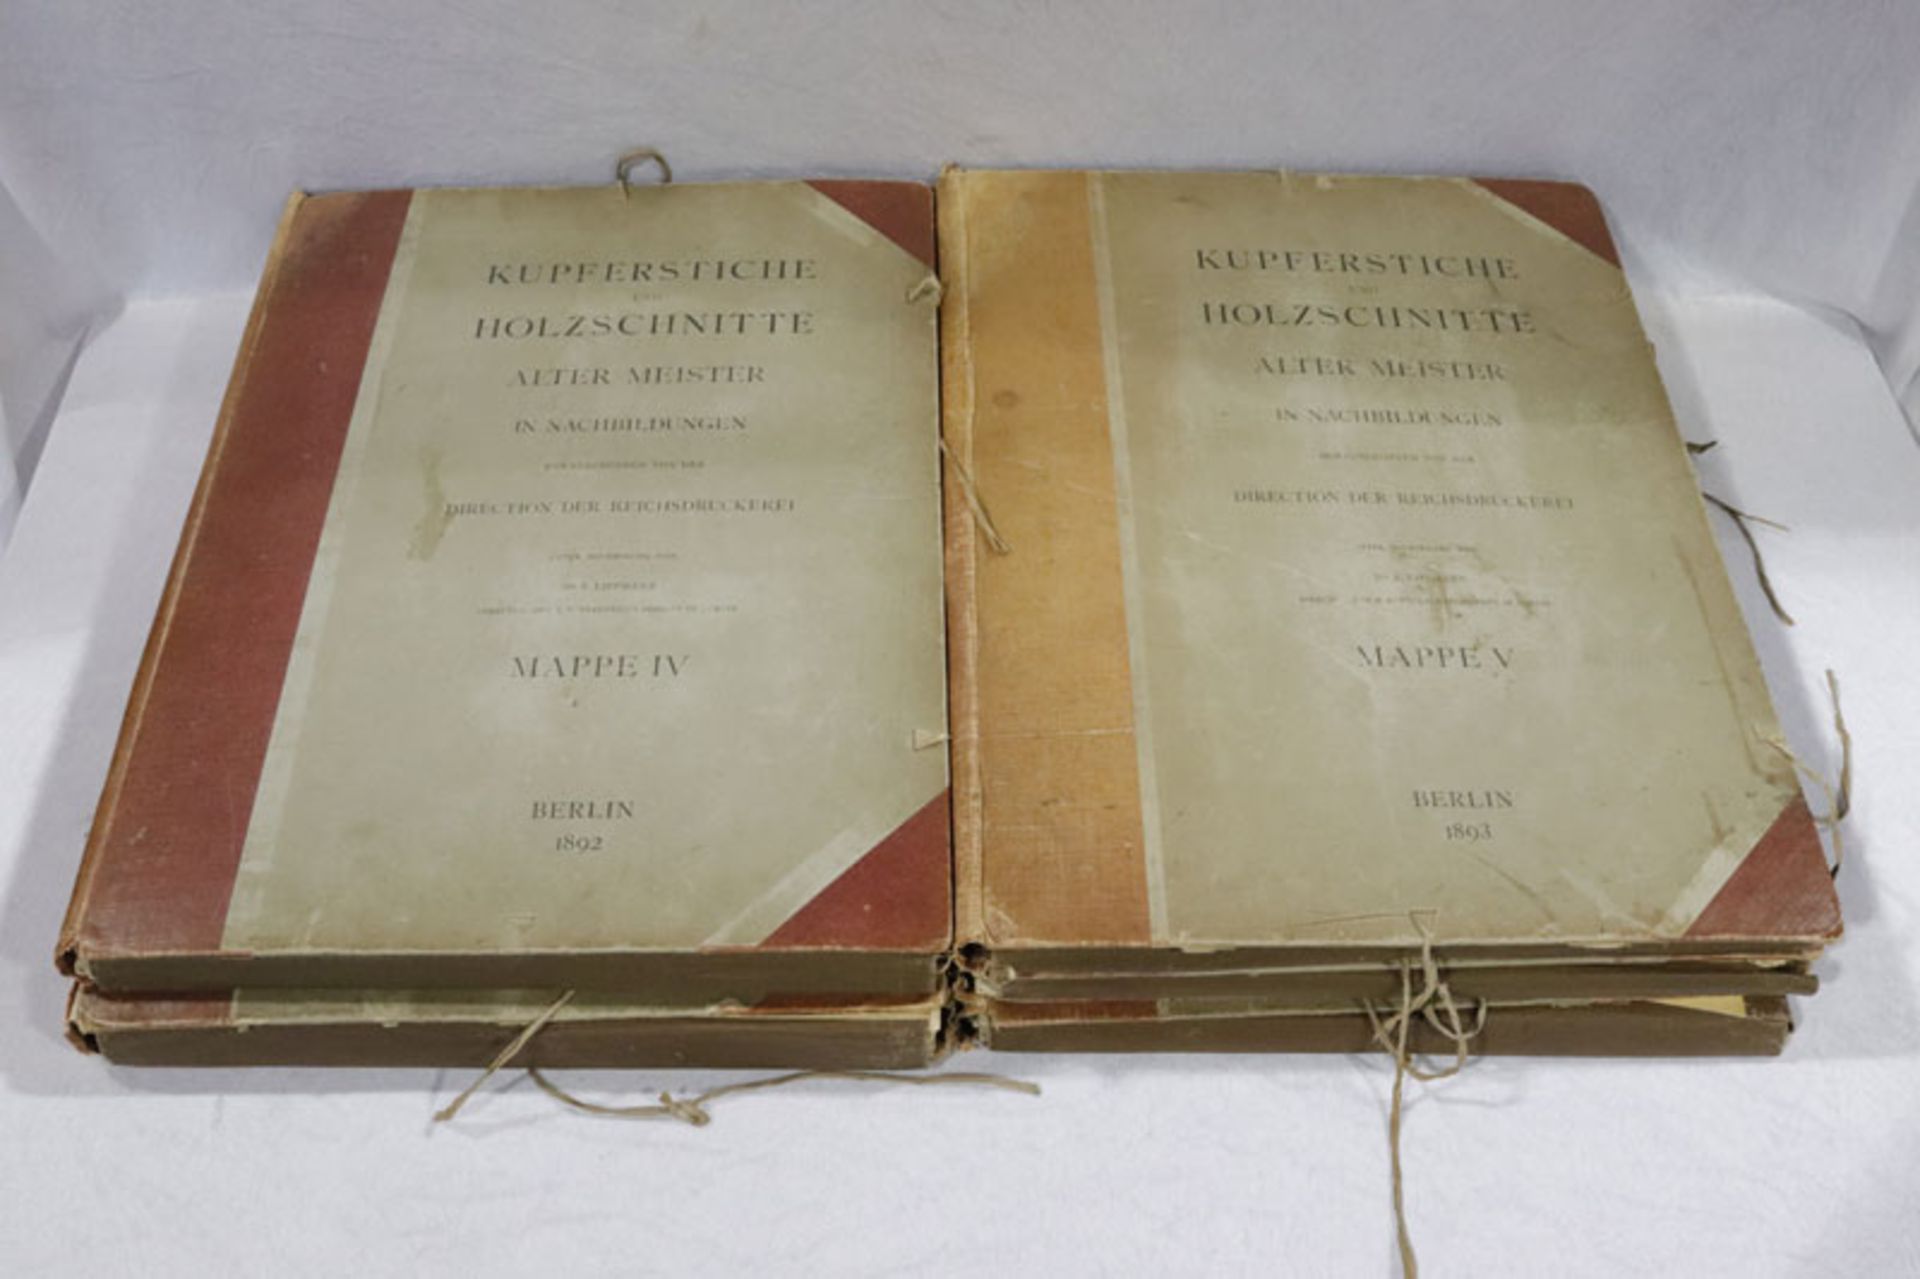 5 Mappen, 1-5, Kupferstiche und Holzschnitte alter Meister in Nachbildungen, Berlin 1889 - 1893, Dr.